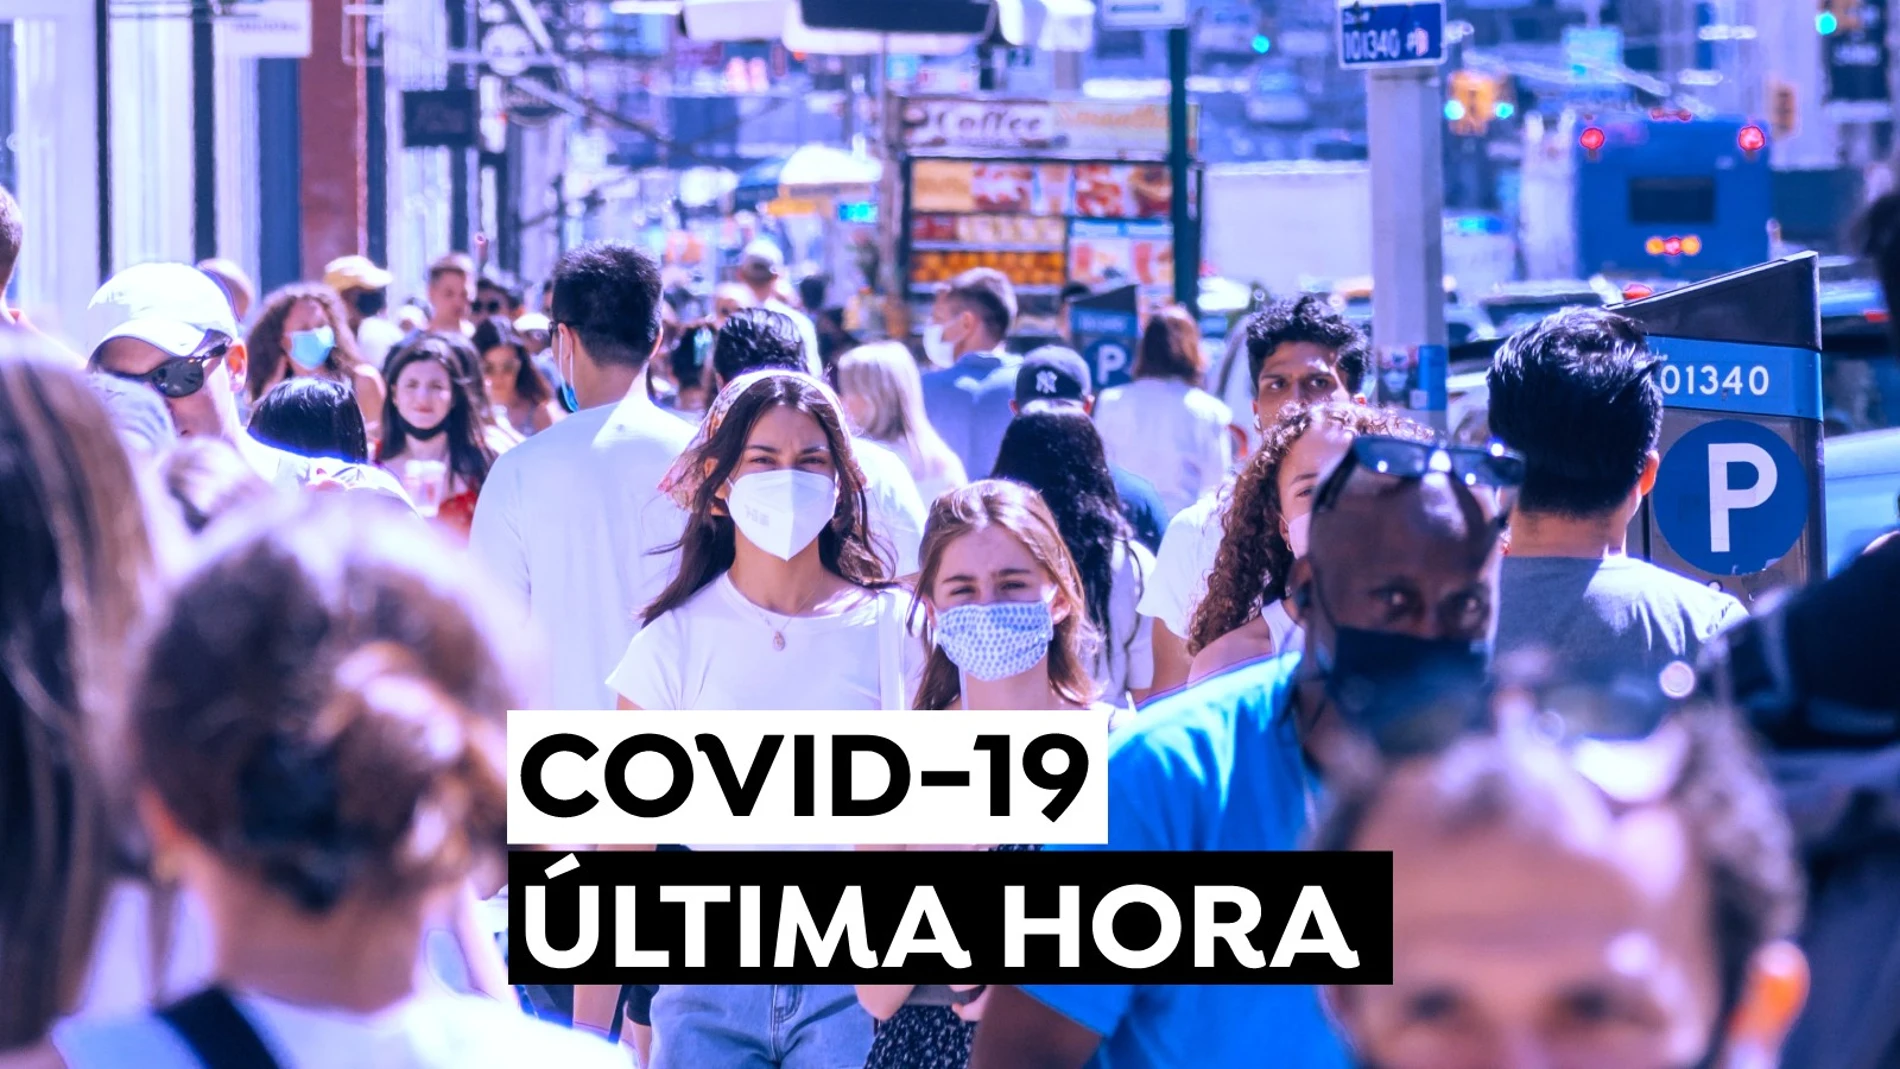 Coronavirus en España hoy: Última hora del COVID-19